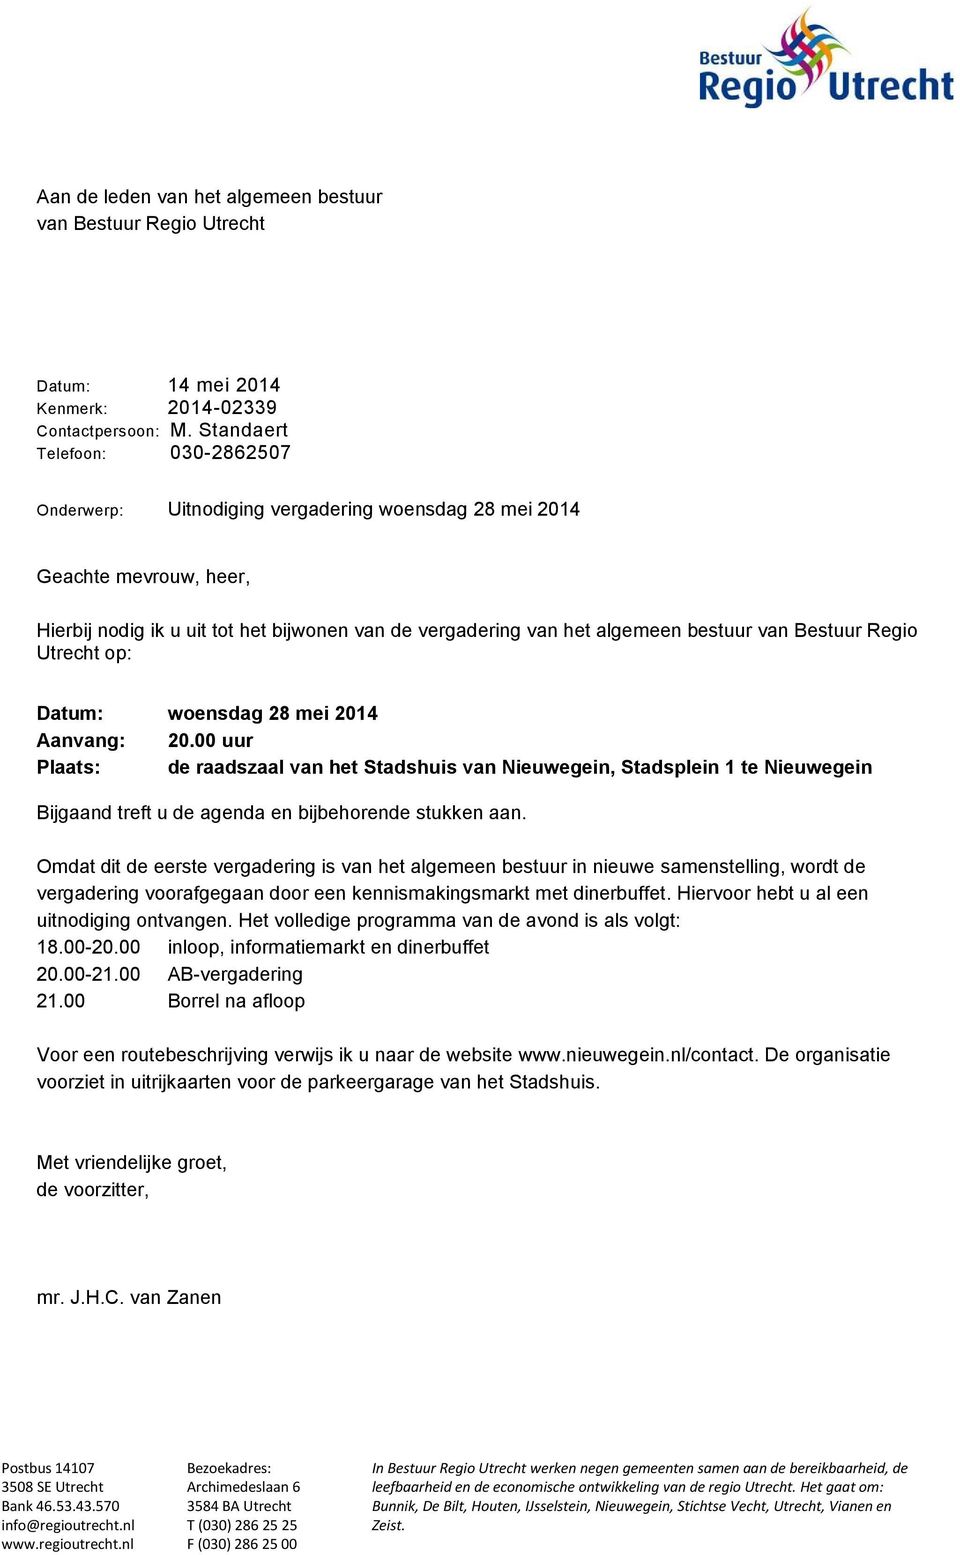 Bestuur Regio Utrecht op: Datum: woensdag 28 mei 2014 Aanvang: 20.